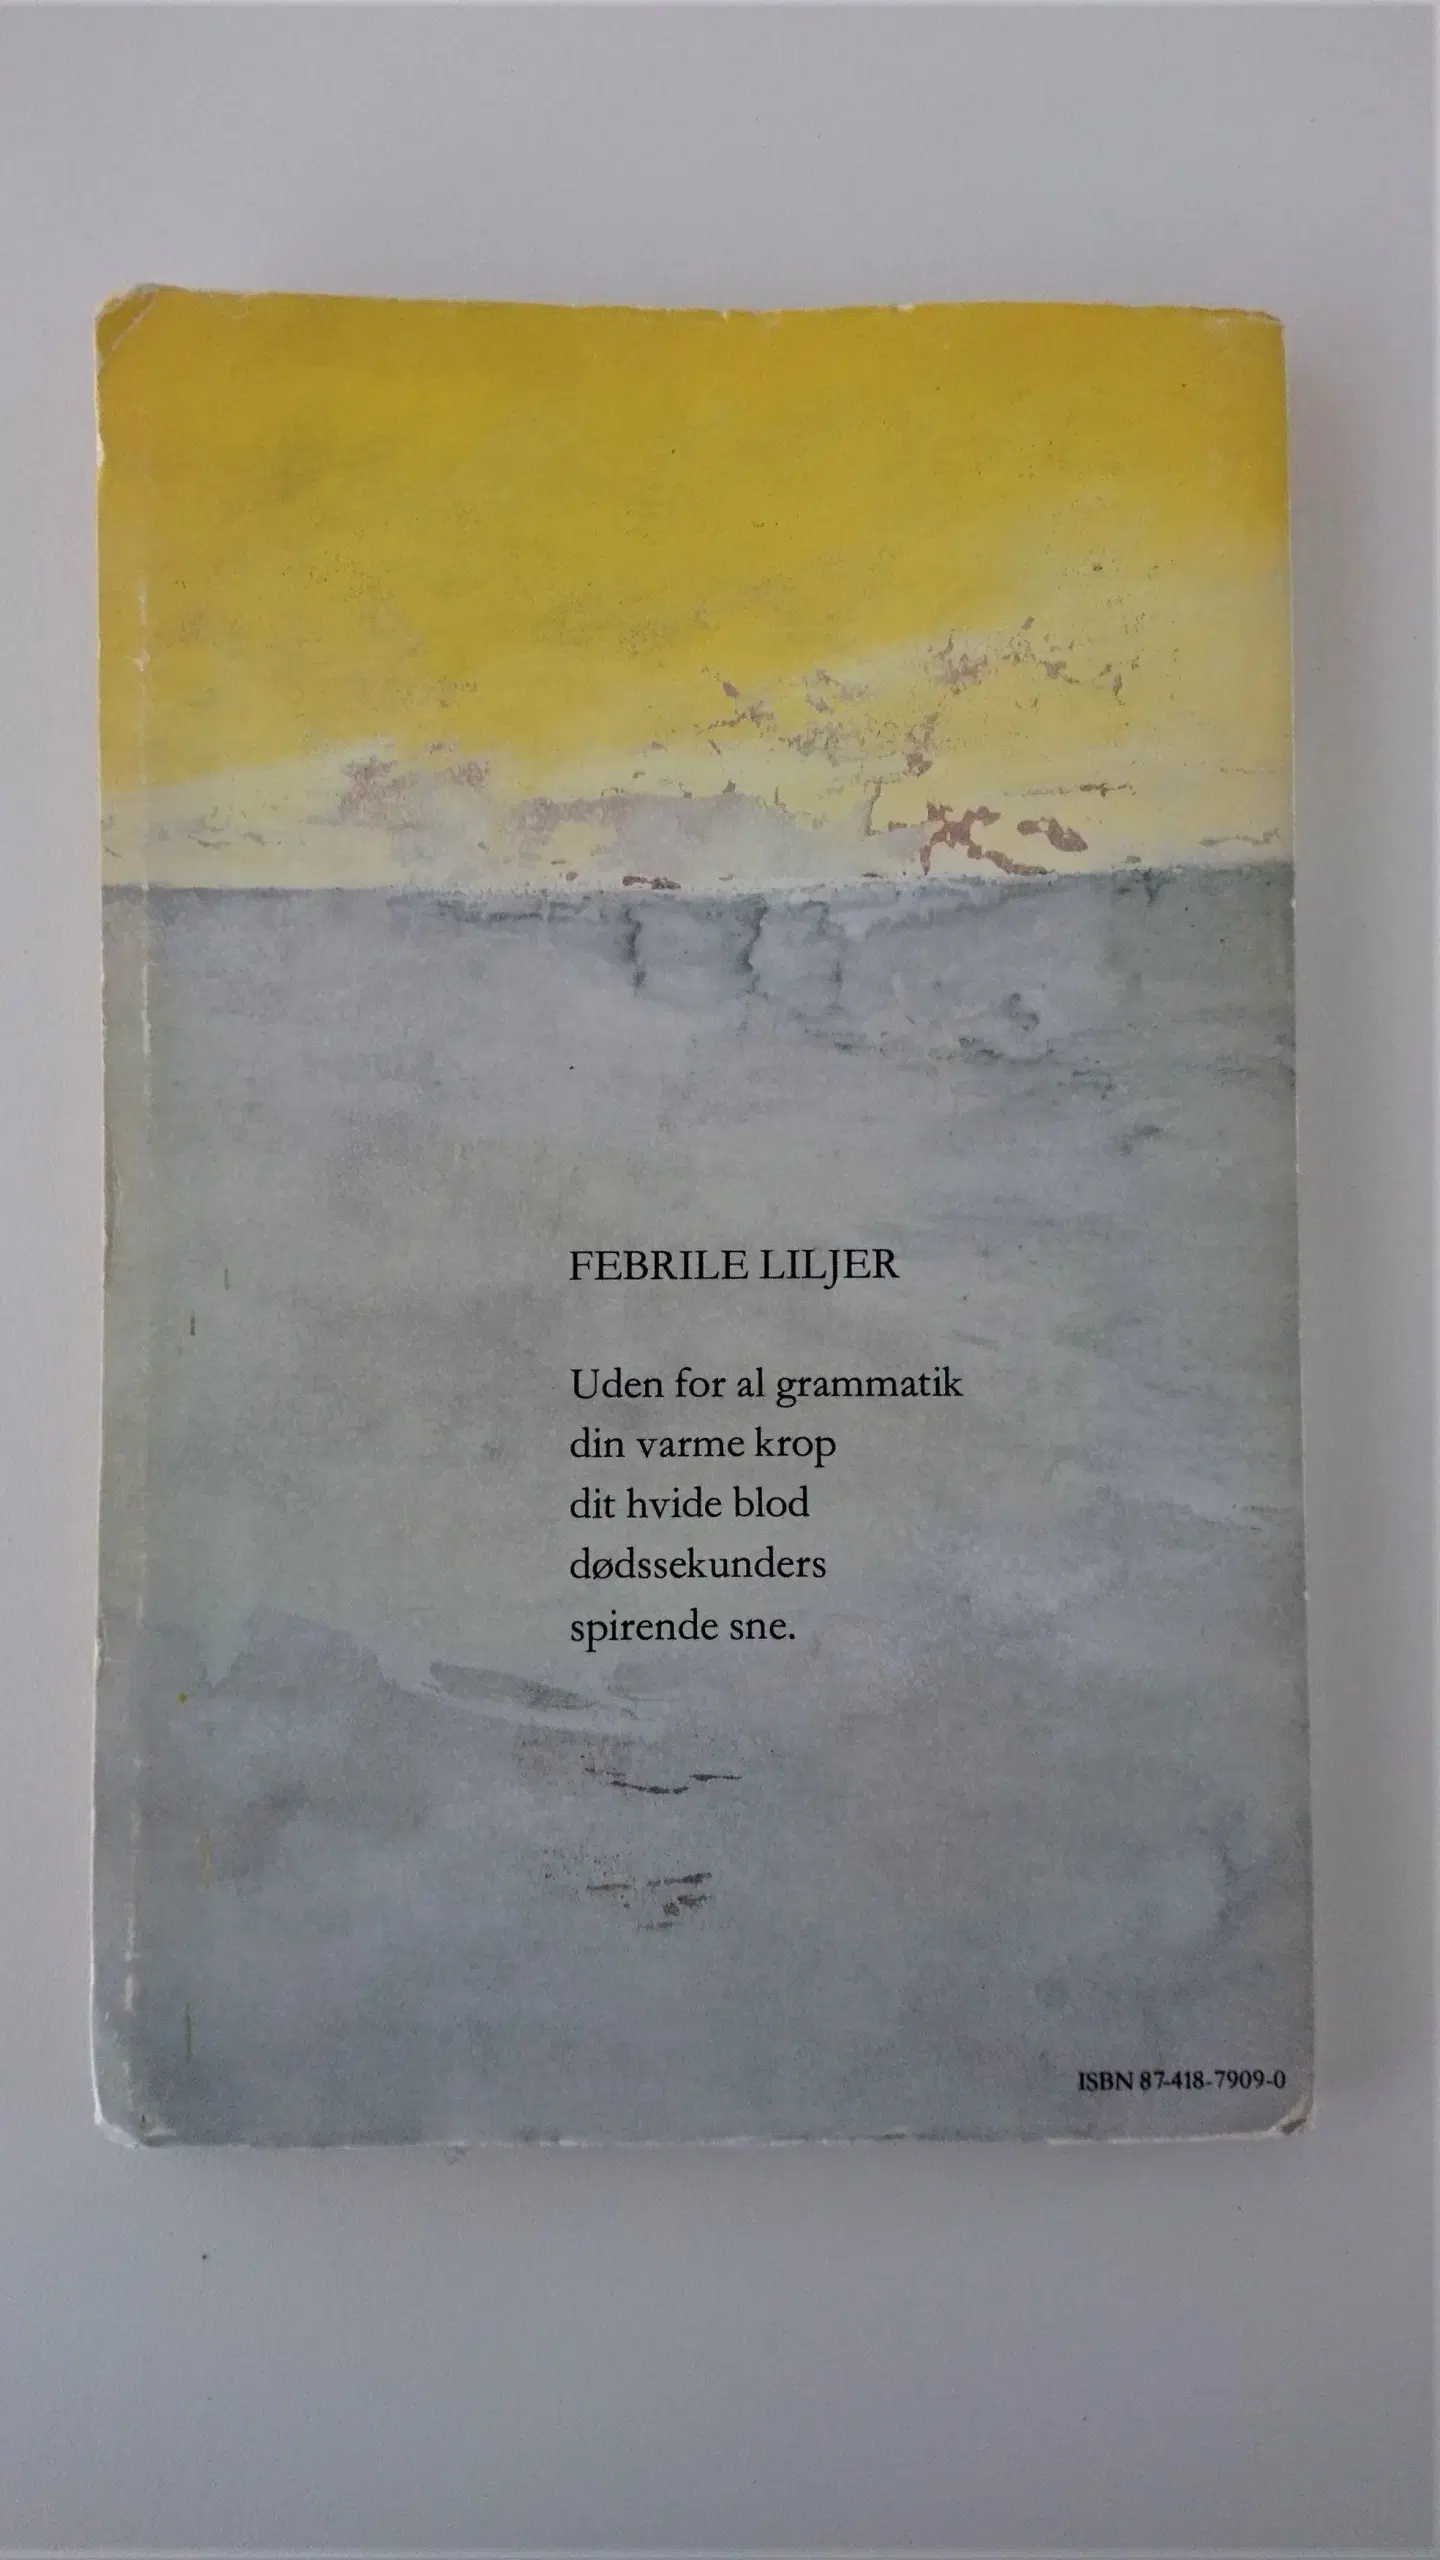 Hvid feber : digte Af Pia Tafdrup